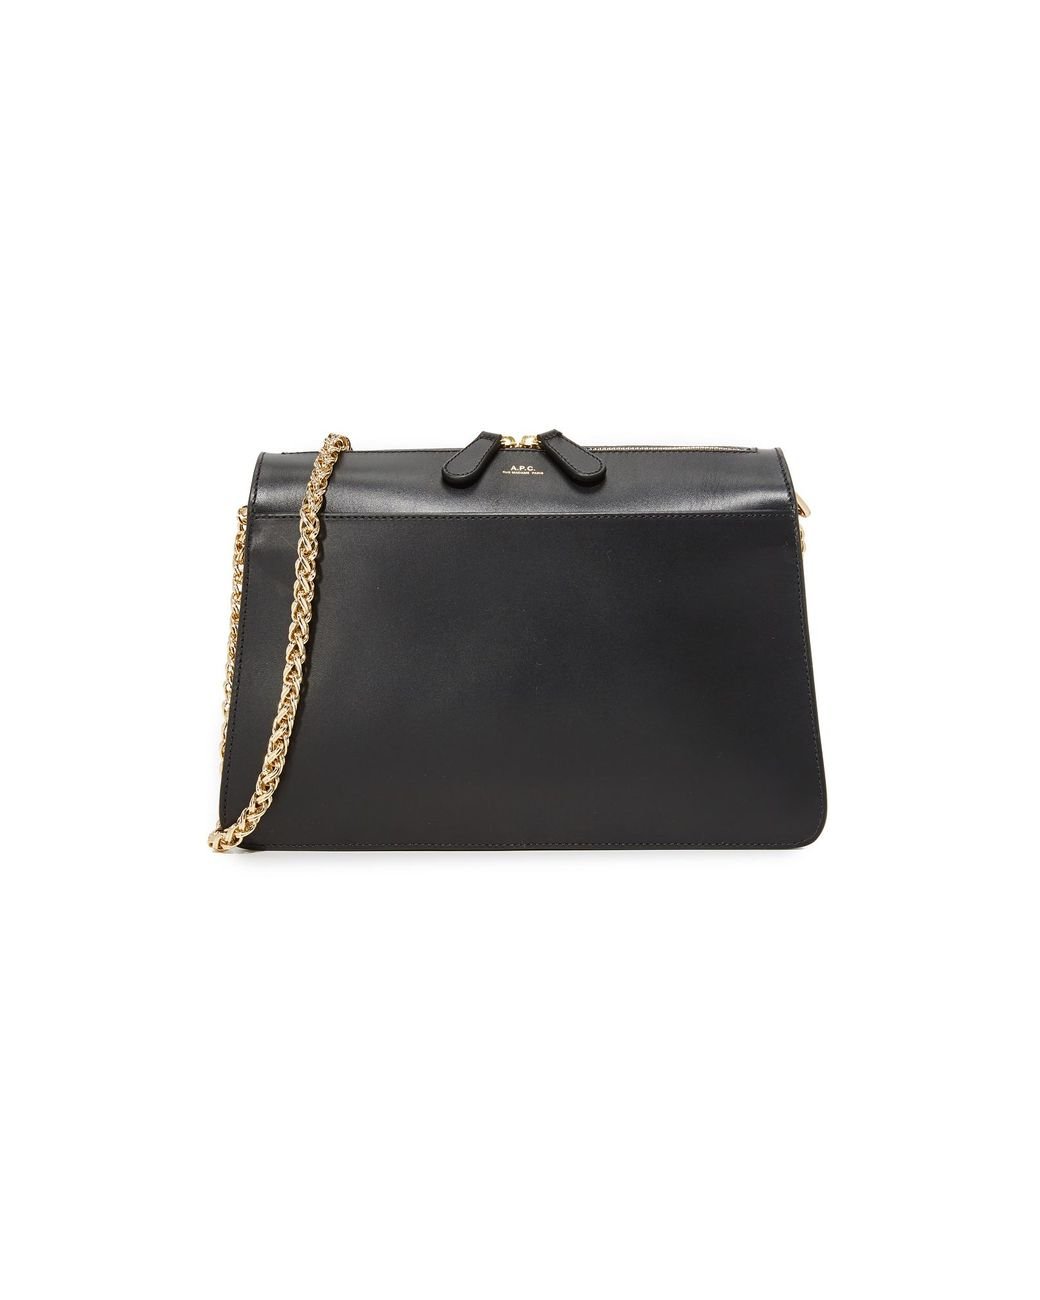 Ella Leather Shoulder Bag in Black - A P C